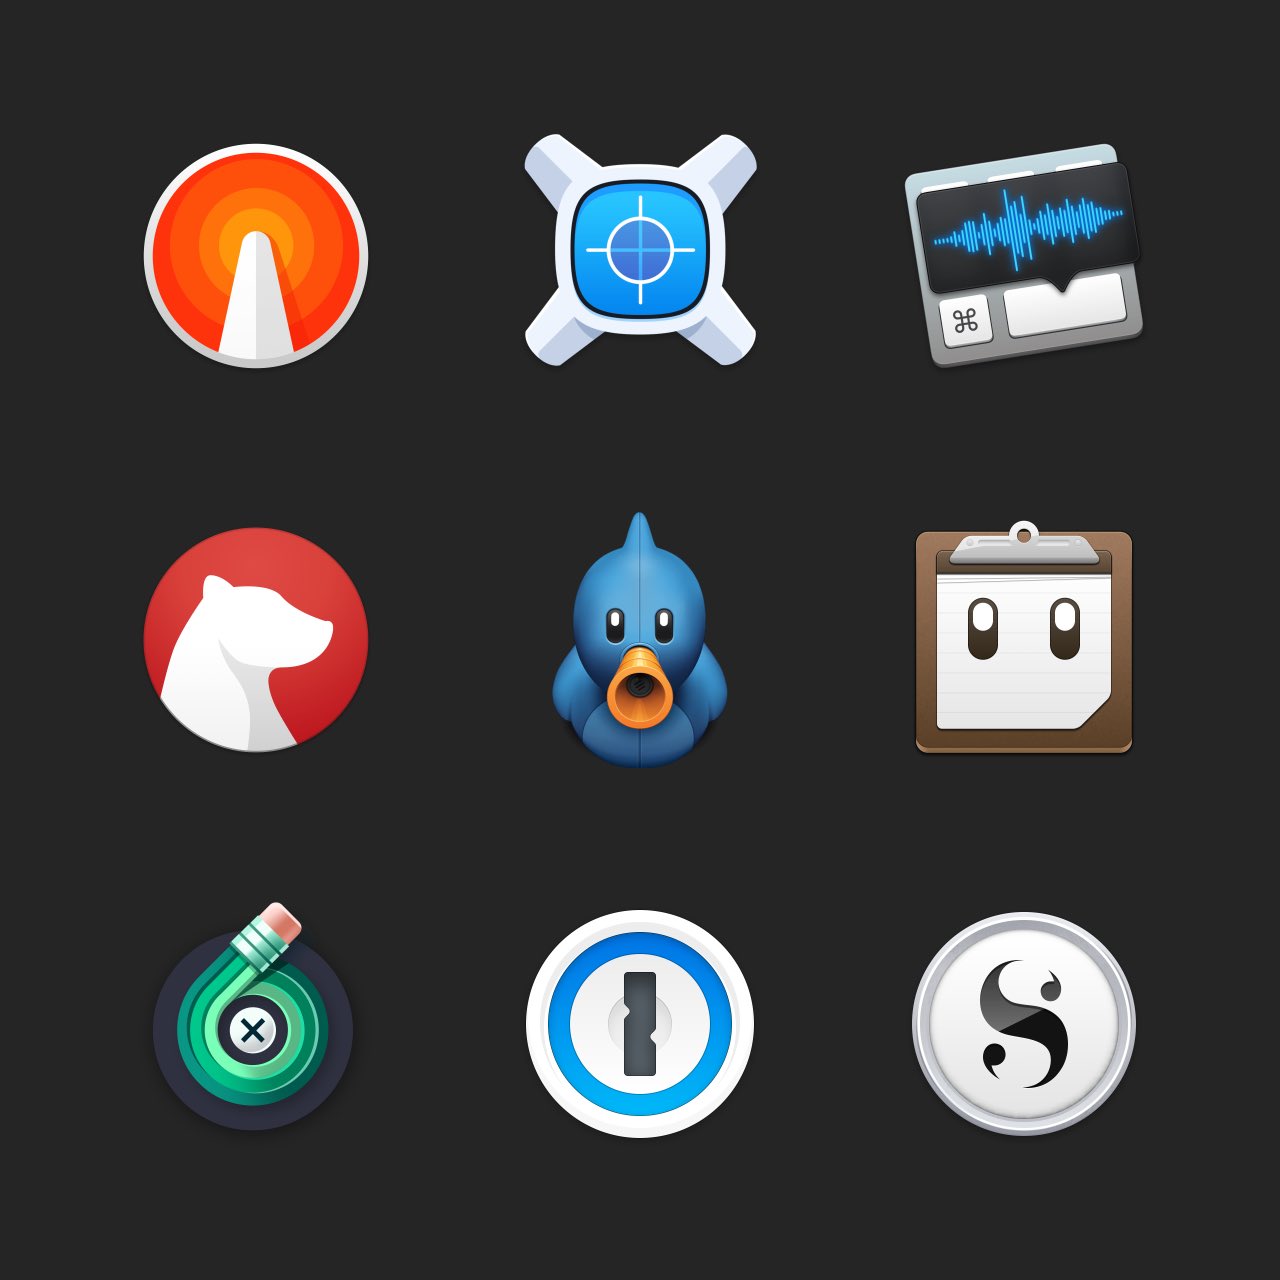 A grande sur-Idicing of MacOS ícones